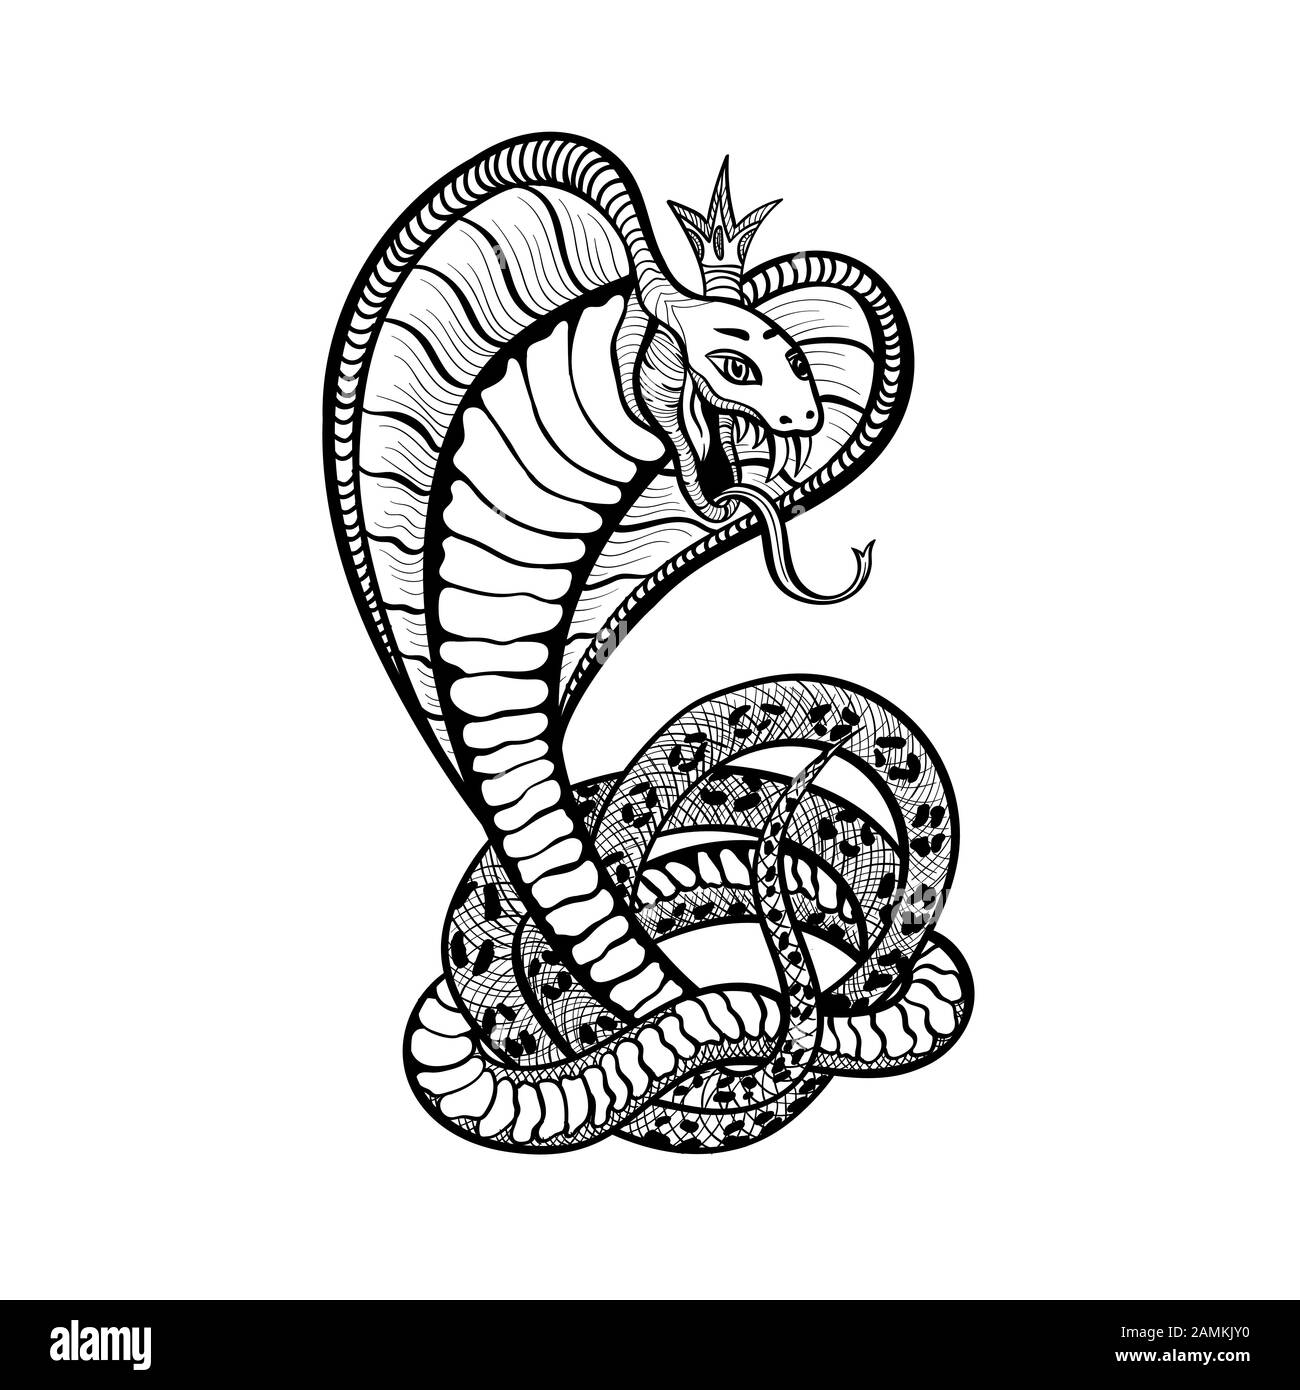 Motif tatouage de serpent, vipère de cobra vectoriel dans la couronne royale avec langue et fangs. Serpent vipère japonais dessiné à la main ou crotale en anneaux, modèle imprimé t-shirt et panneau de club de motard Illustration de Vecteur